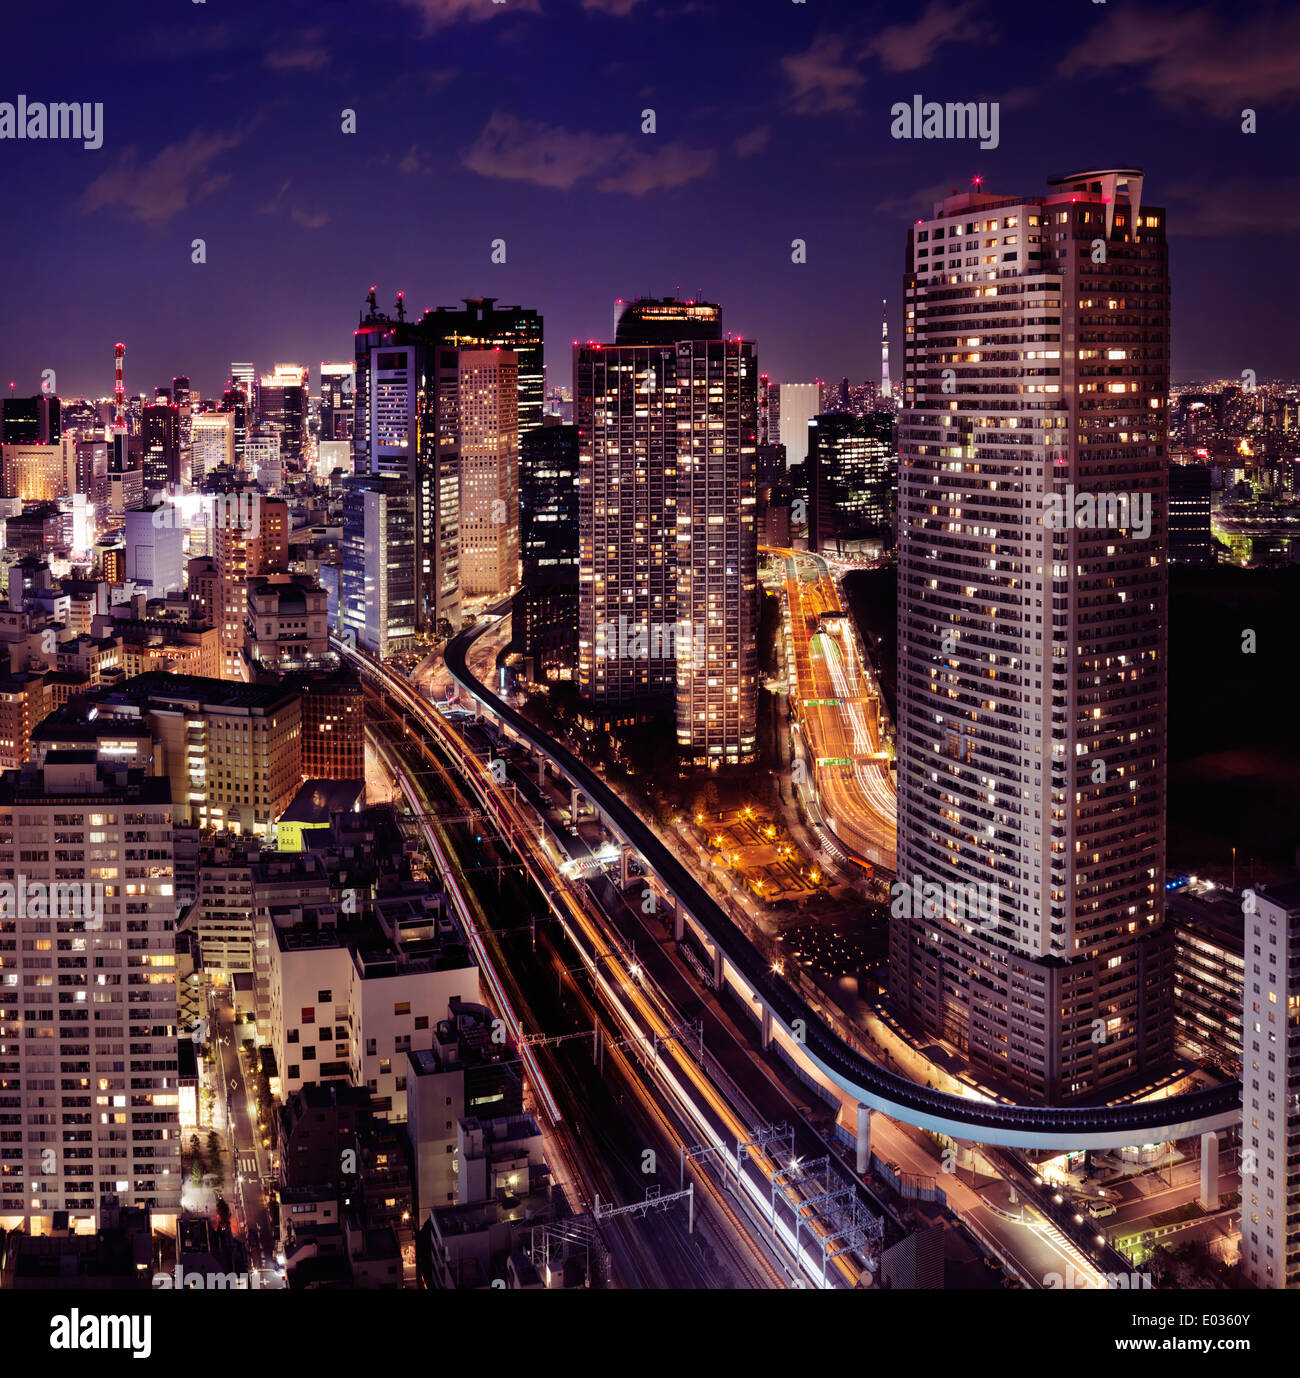 Führerschein verfügbar unter MaximImages.com - Nachtblick über Tokio mit beleuchteten Autobahnen und Bahnlinien. Minato, Tokio, Japan. Stockfoto